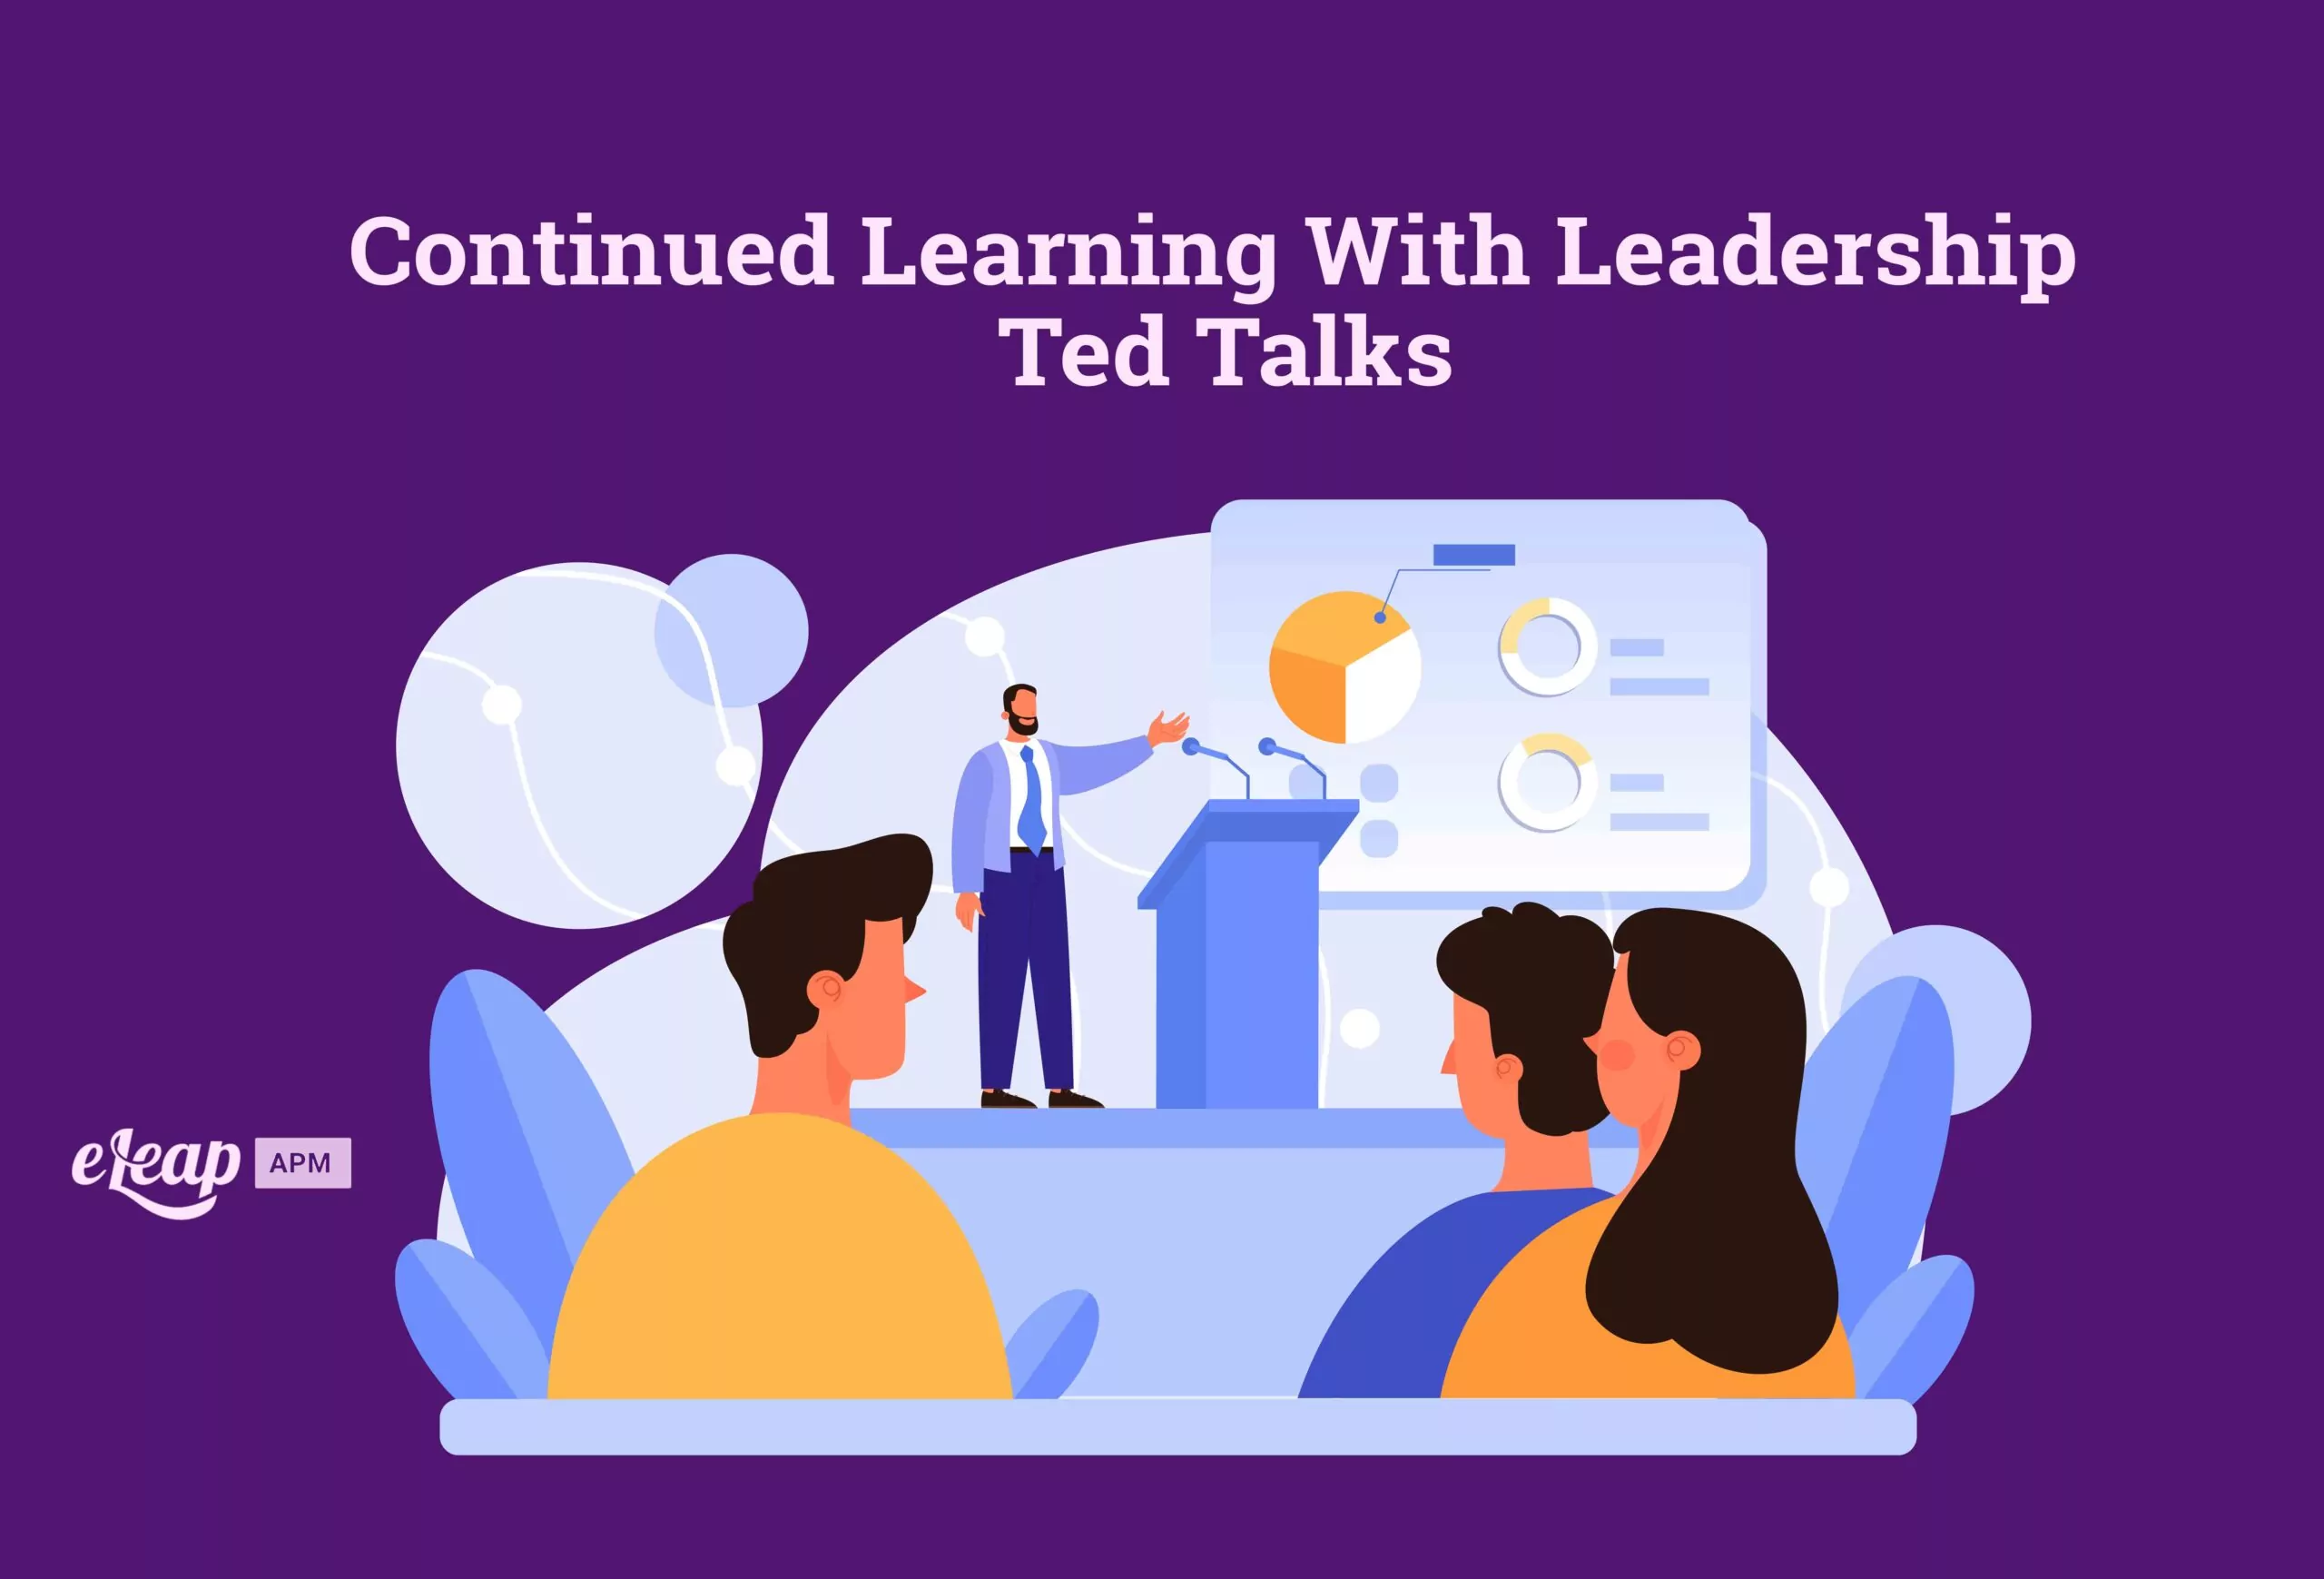 Leadership Ted Talks